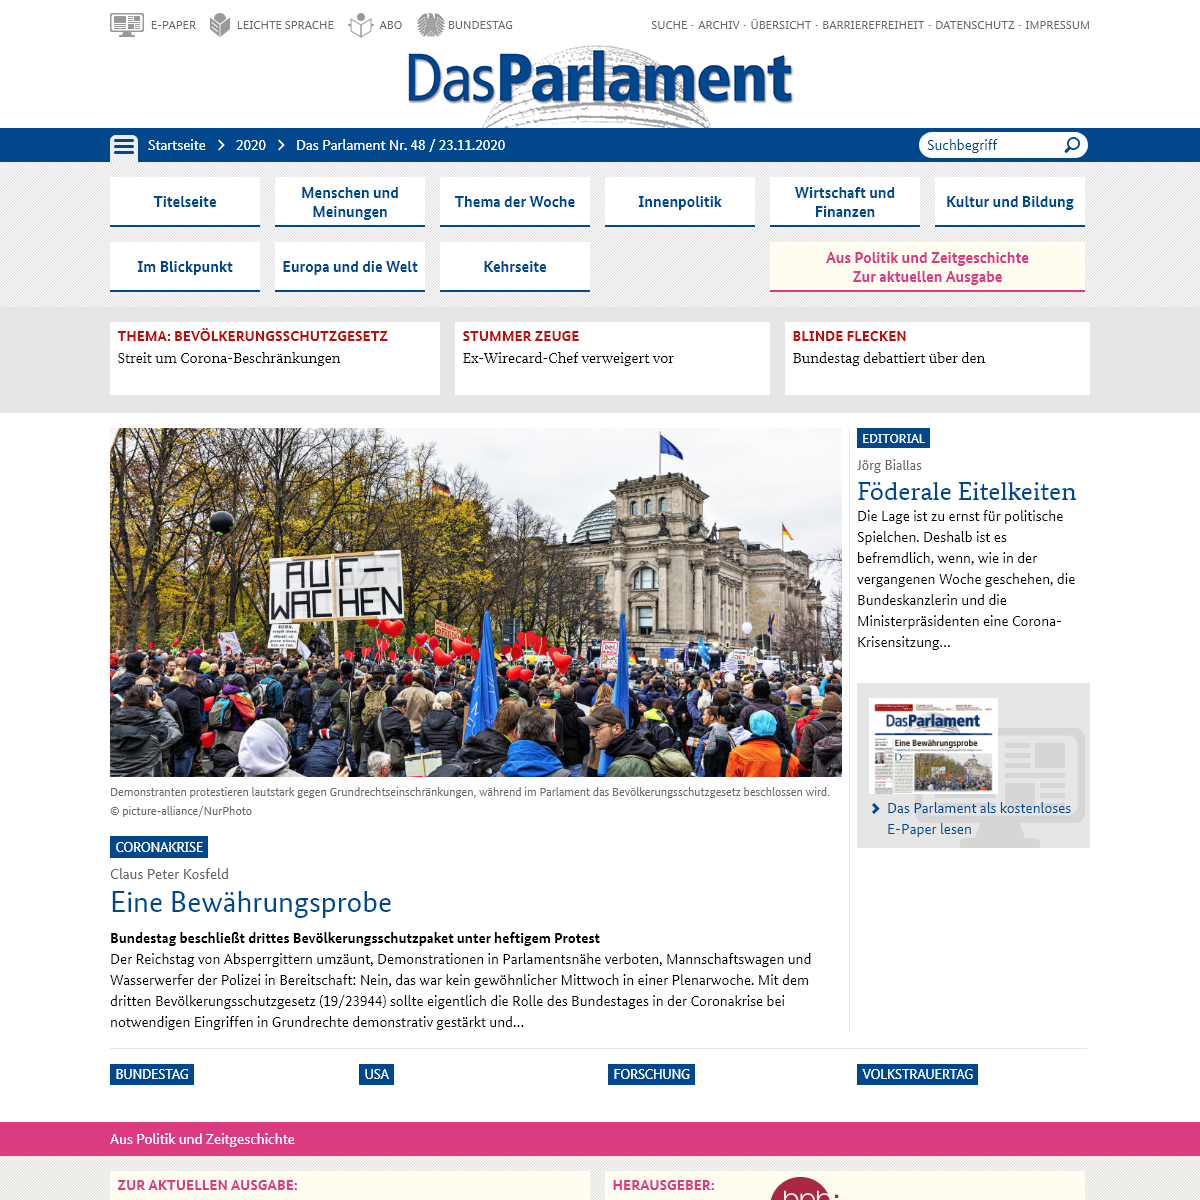 A complete backup of das-parlament.de